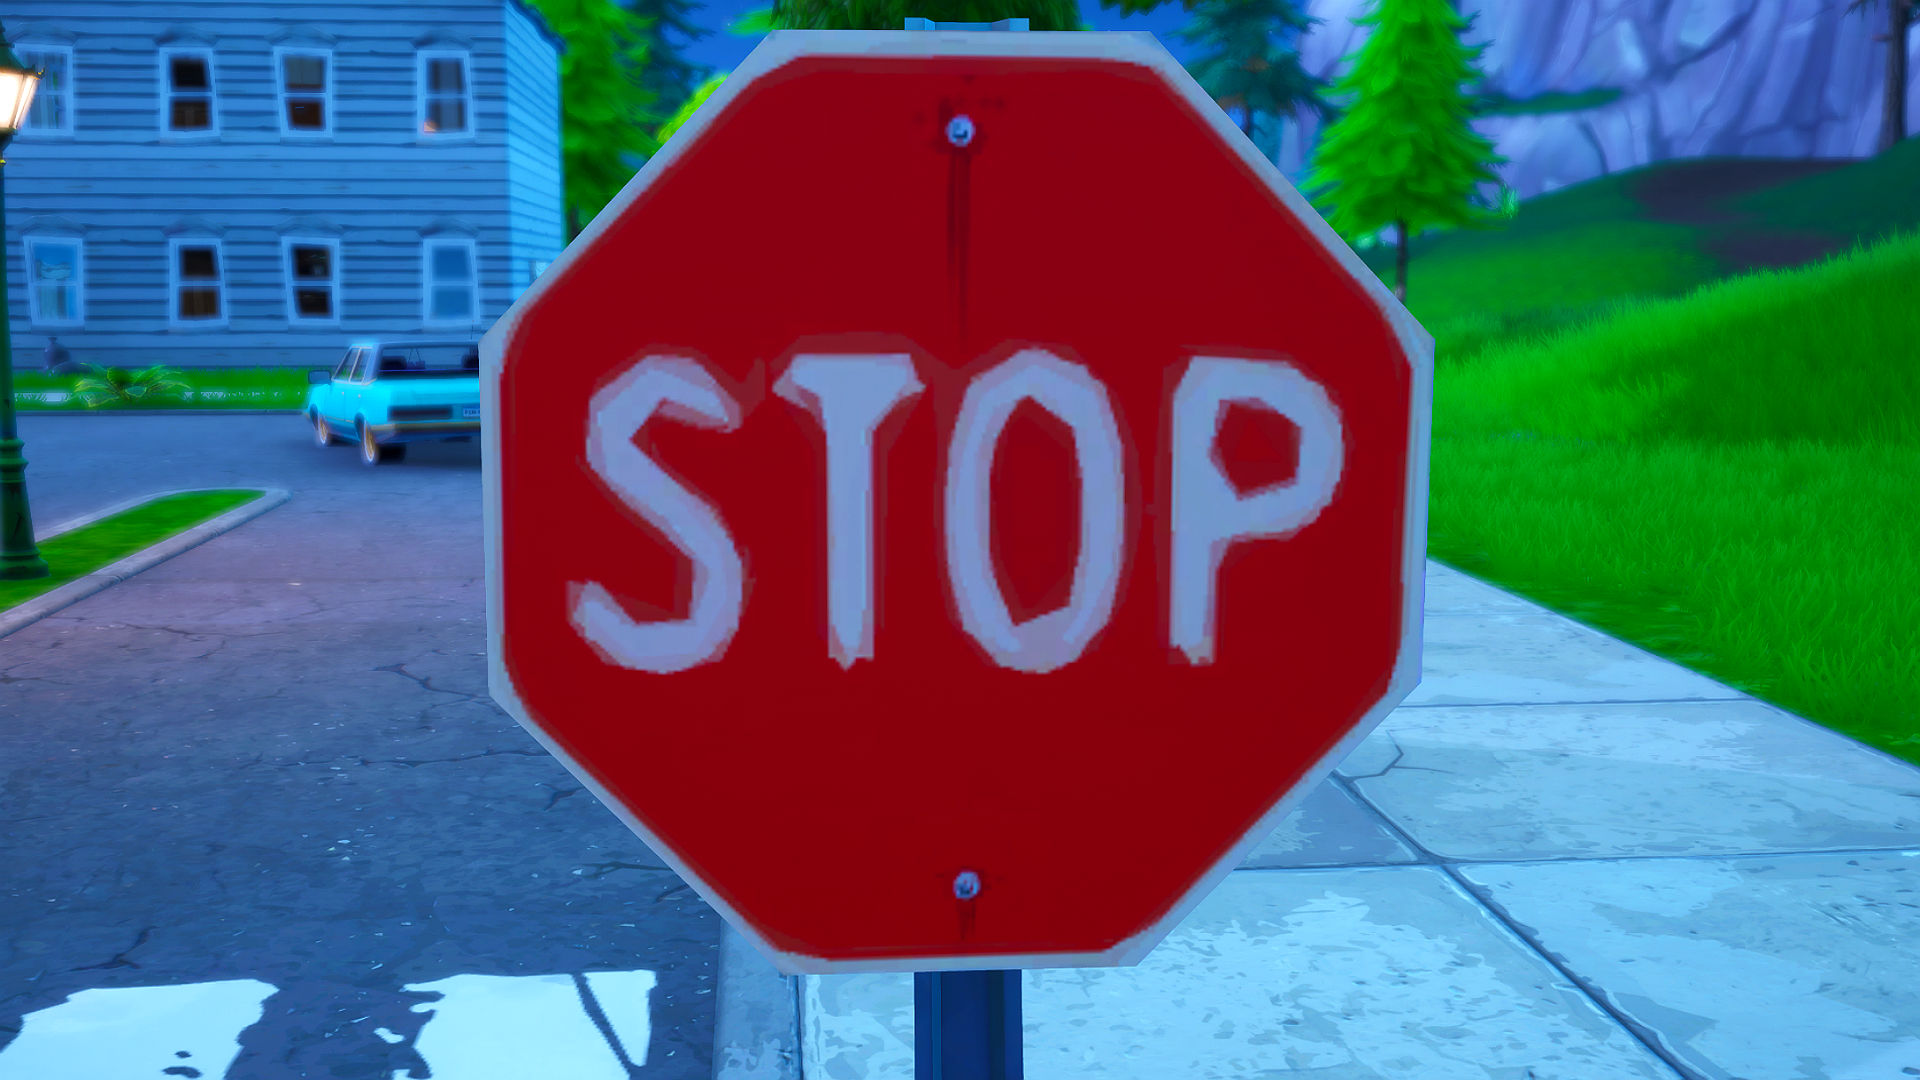 Fortnite stoppskylt: en plats att förstöra stoppskyltar med katalysatorkläder under säsong 10